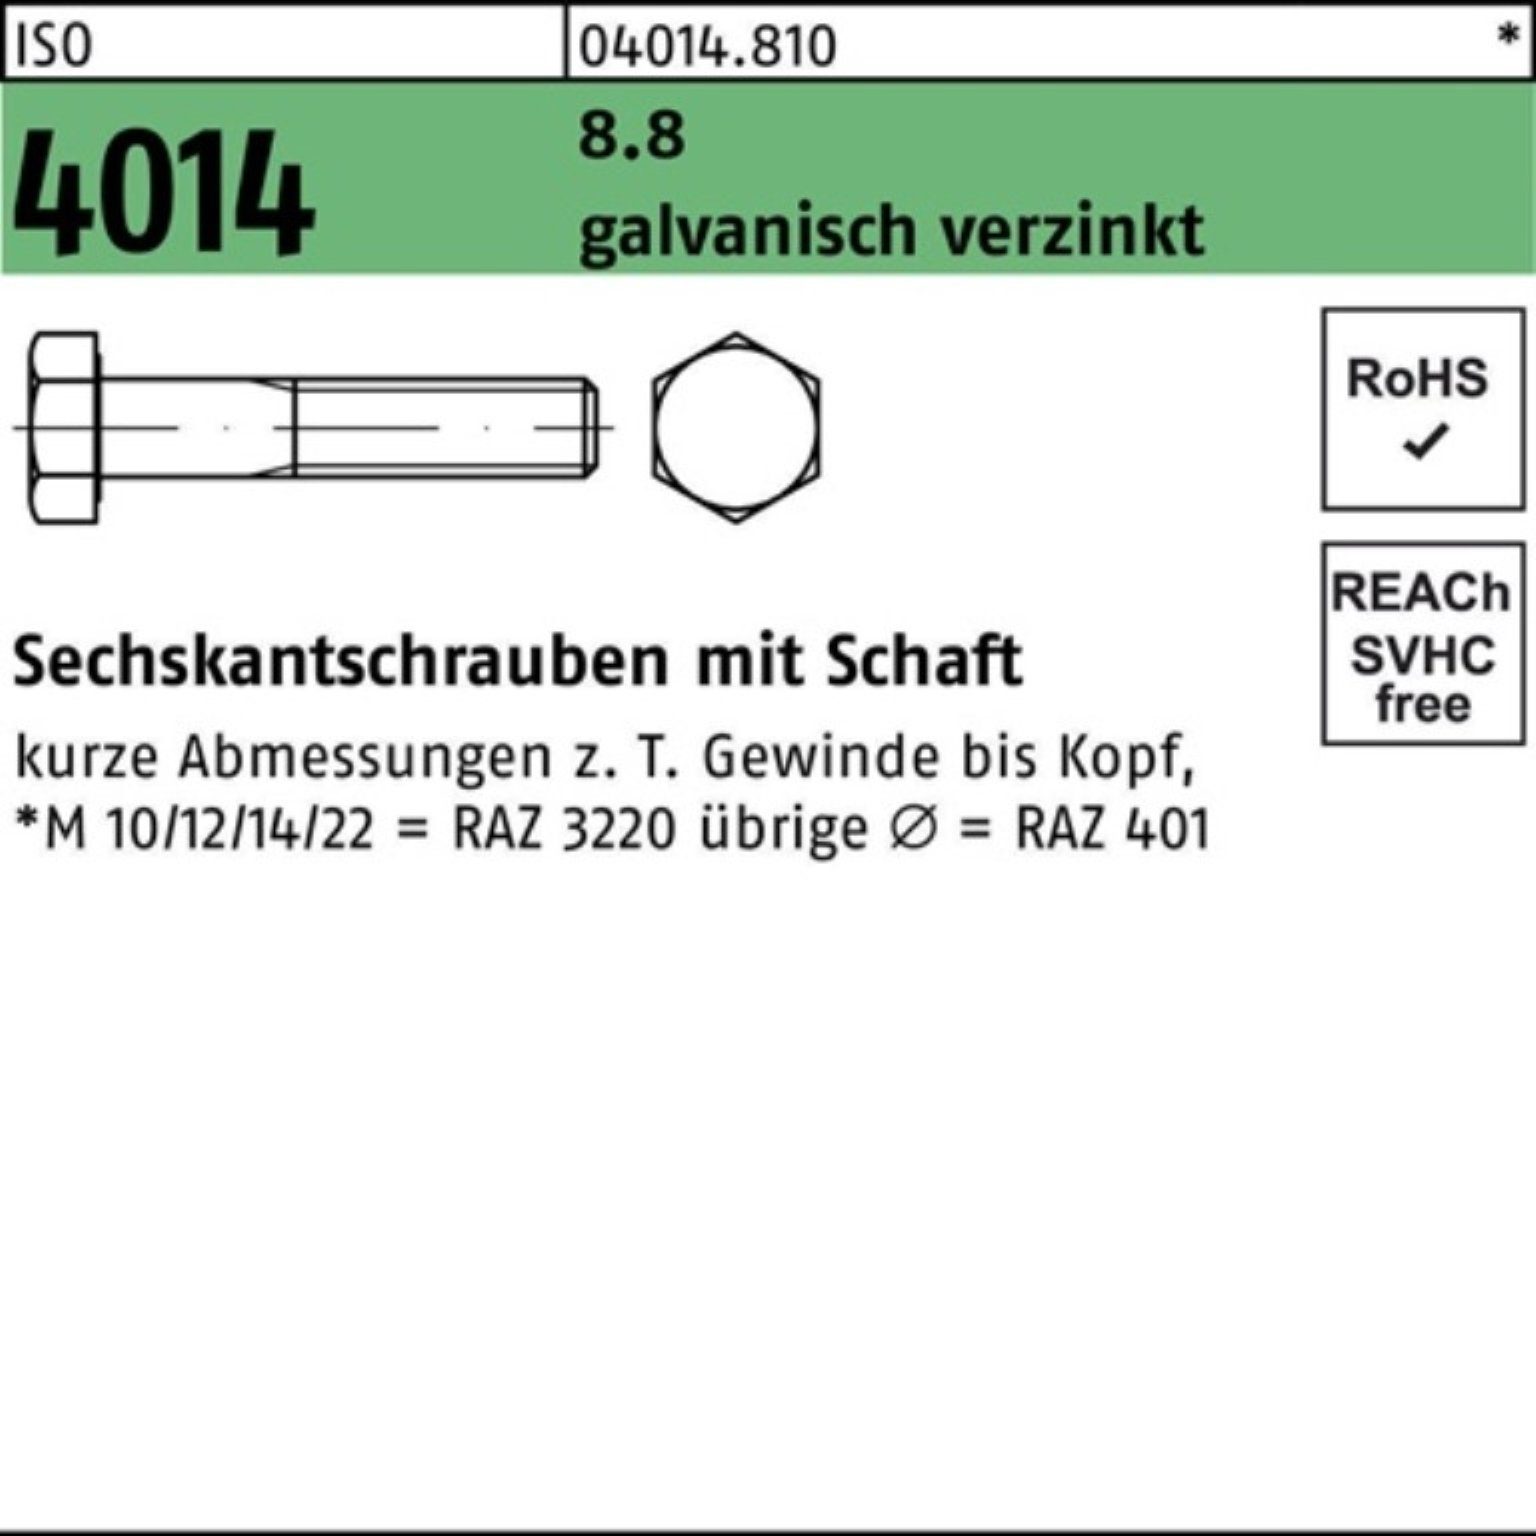 Sechskantschraube Sechskantschraube 8.8 M18x 150 Bufab Pack Schaft 100er 4014 ISO 2 galv.verz.